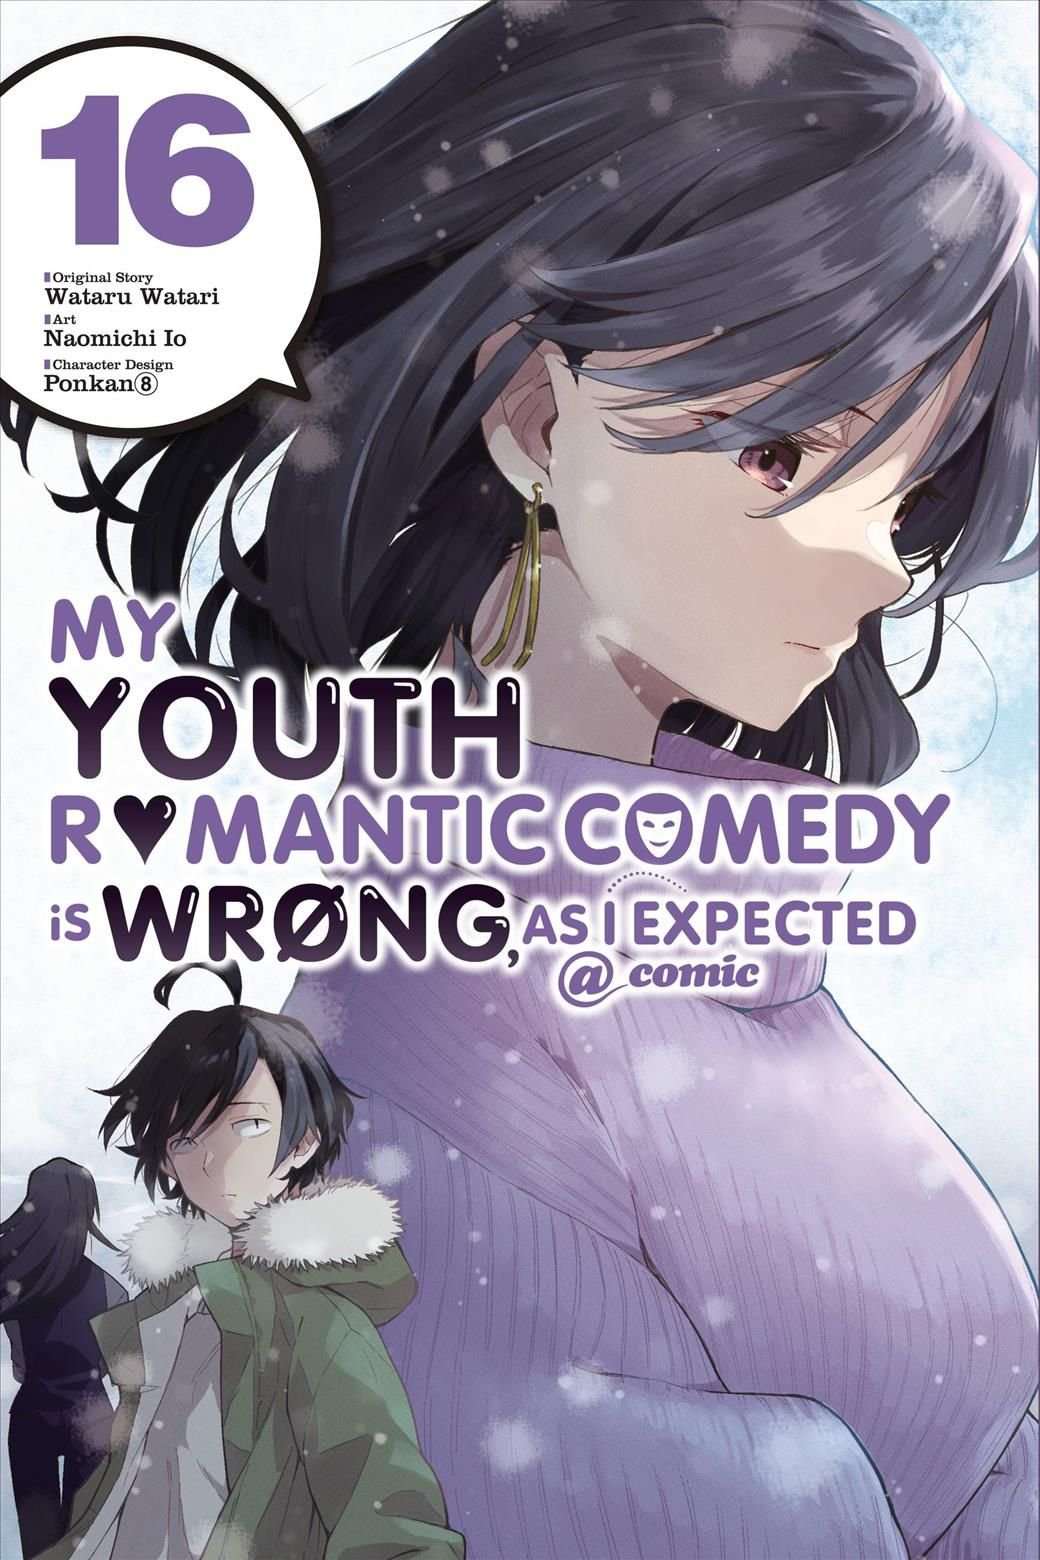 Art] Yahari Ore no Seishun Rabukome wa Machigatteiru. -Monologue- Volume 16  Cover : r/manga